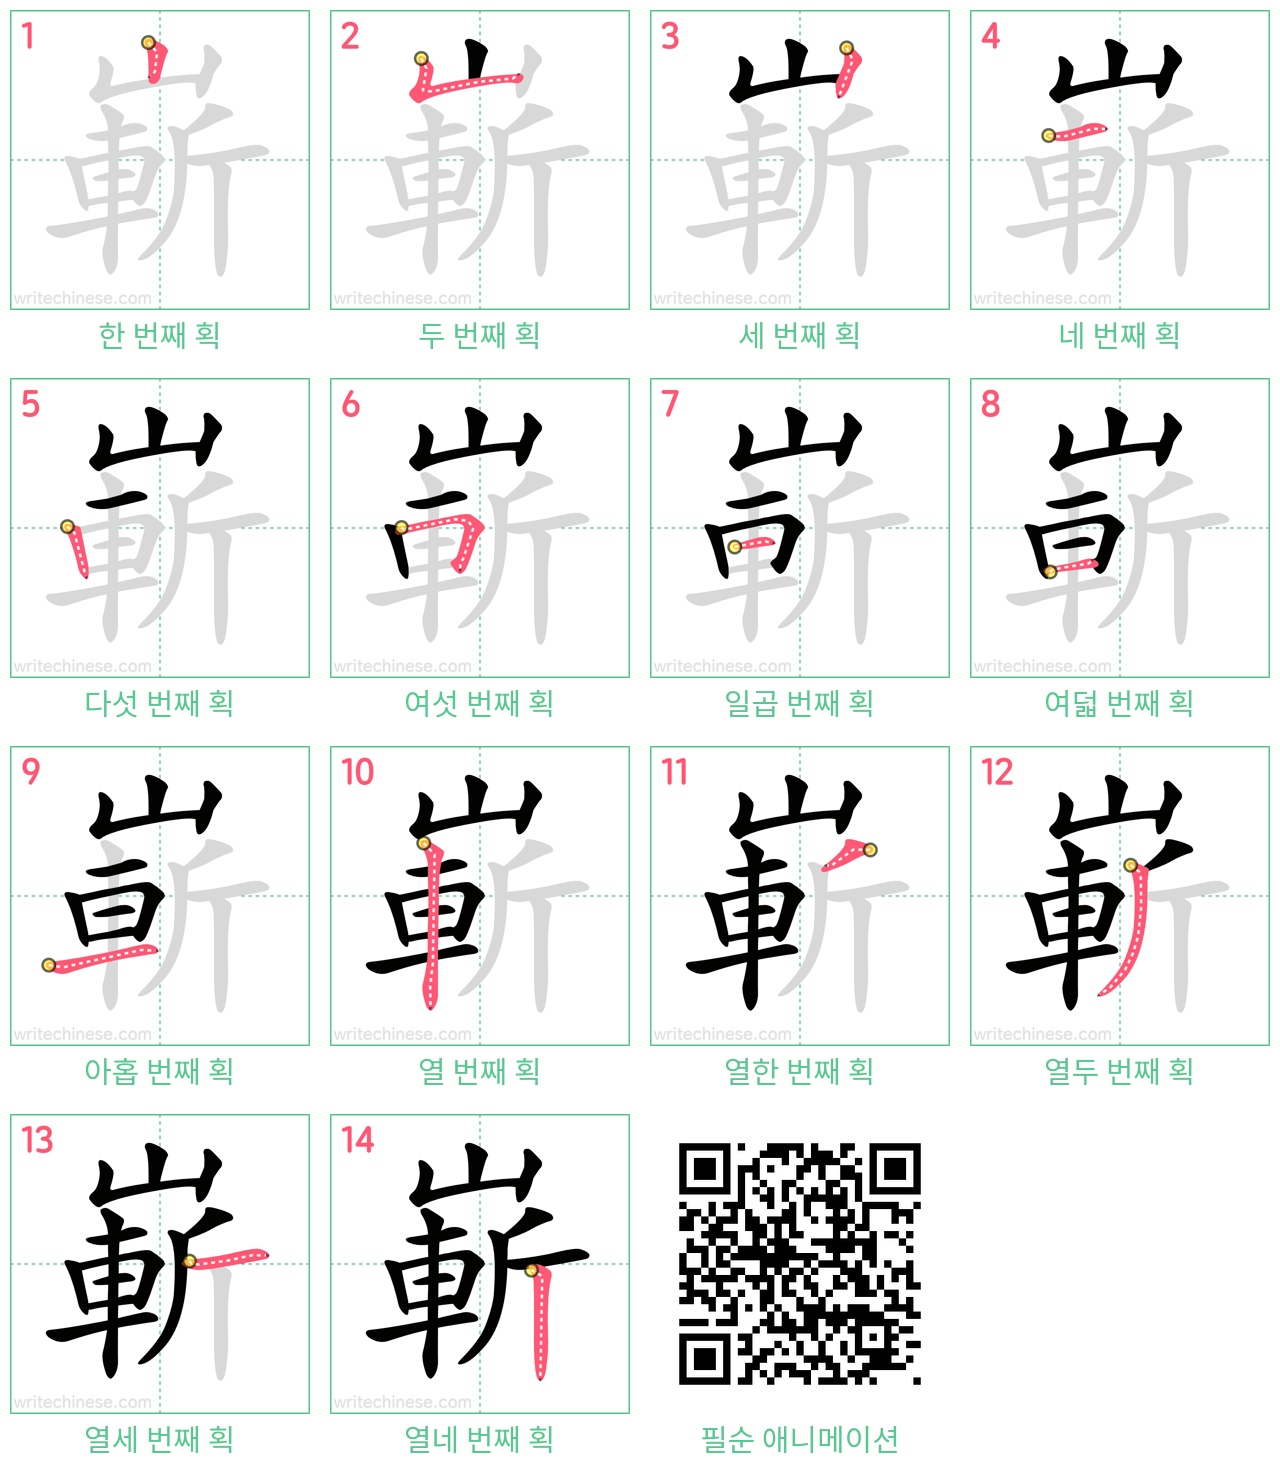 嶄 step-by-step stroke order diagrams